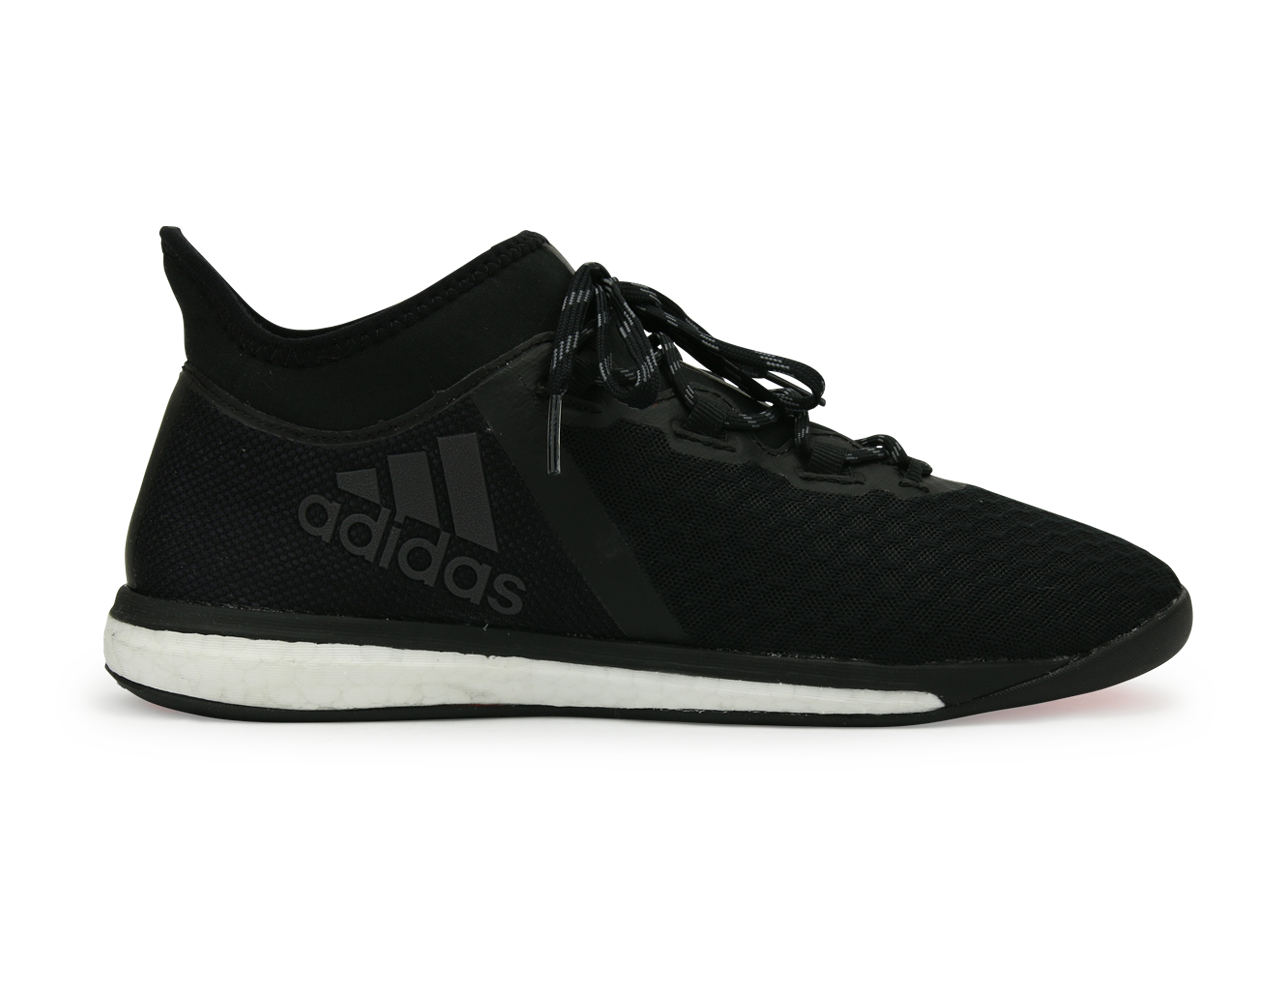 slepen Kinderrijmpjes noorden adidas Men's X 16.1 Street Indoor Soccer Shoes Core Black/Solar Red –  Azteca Soccer